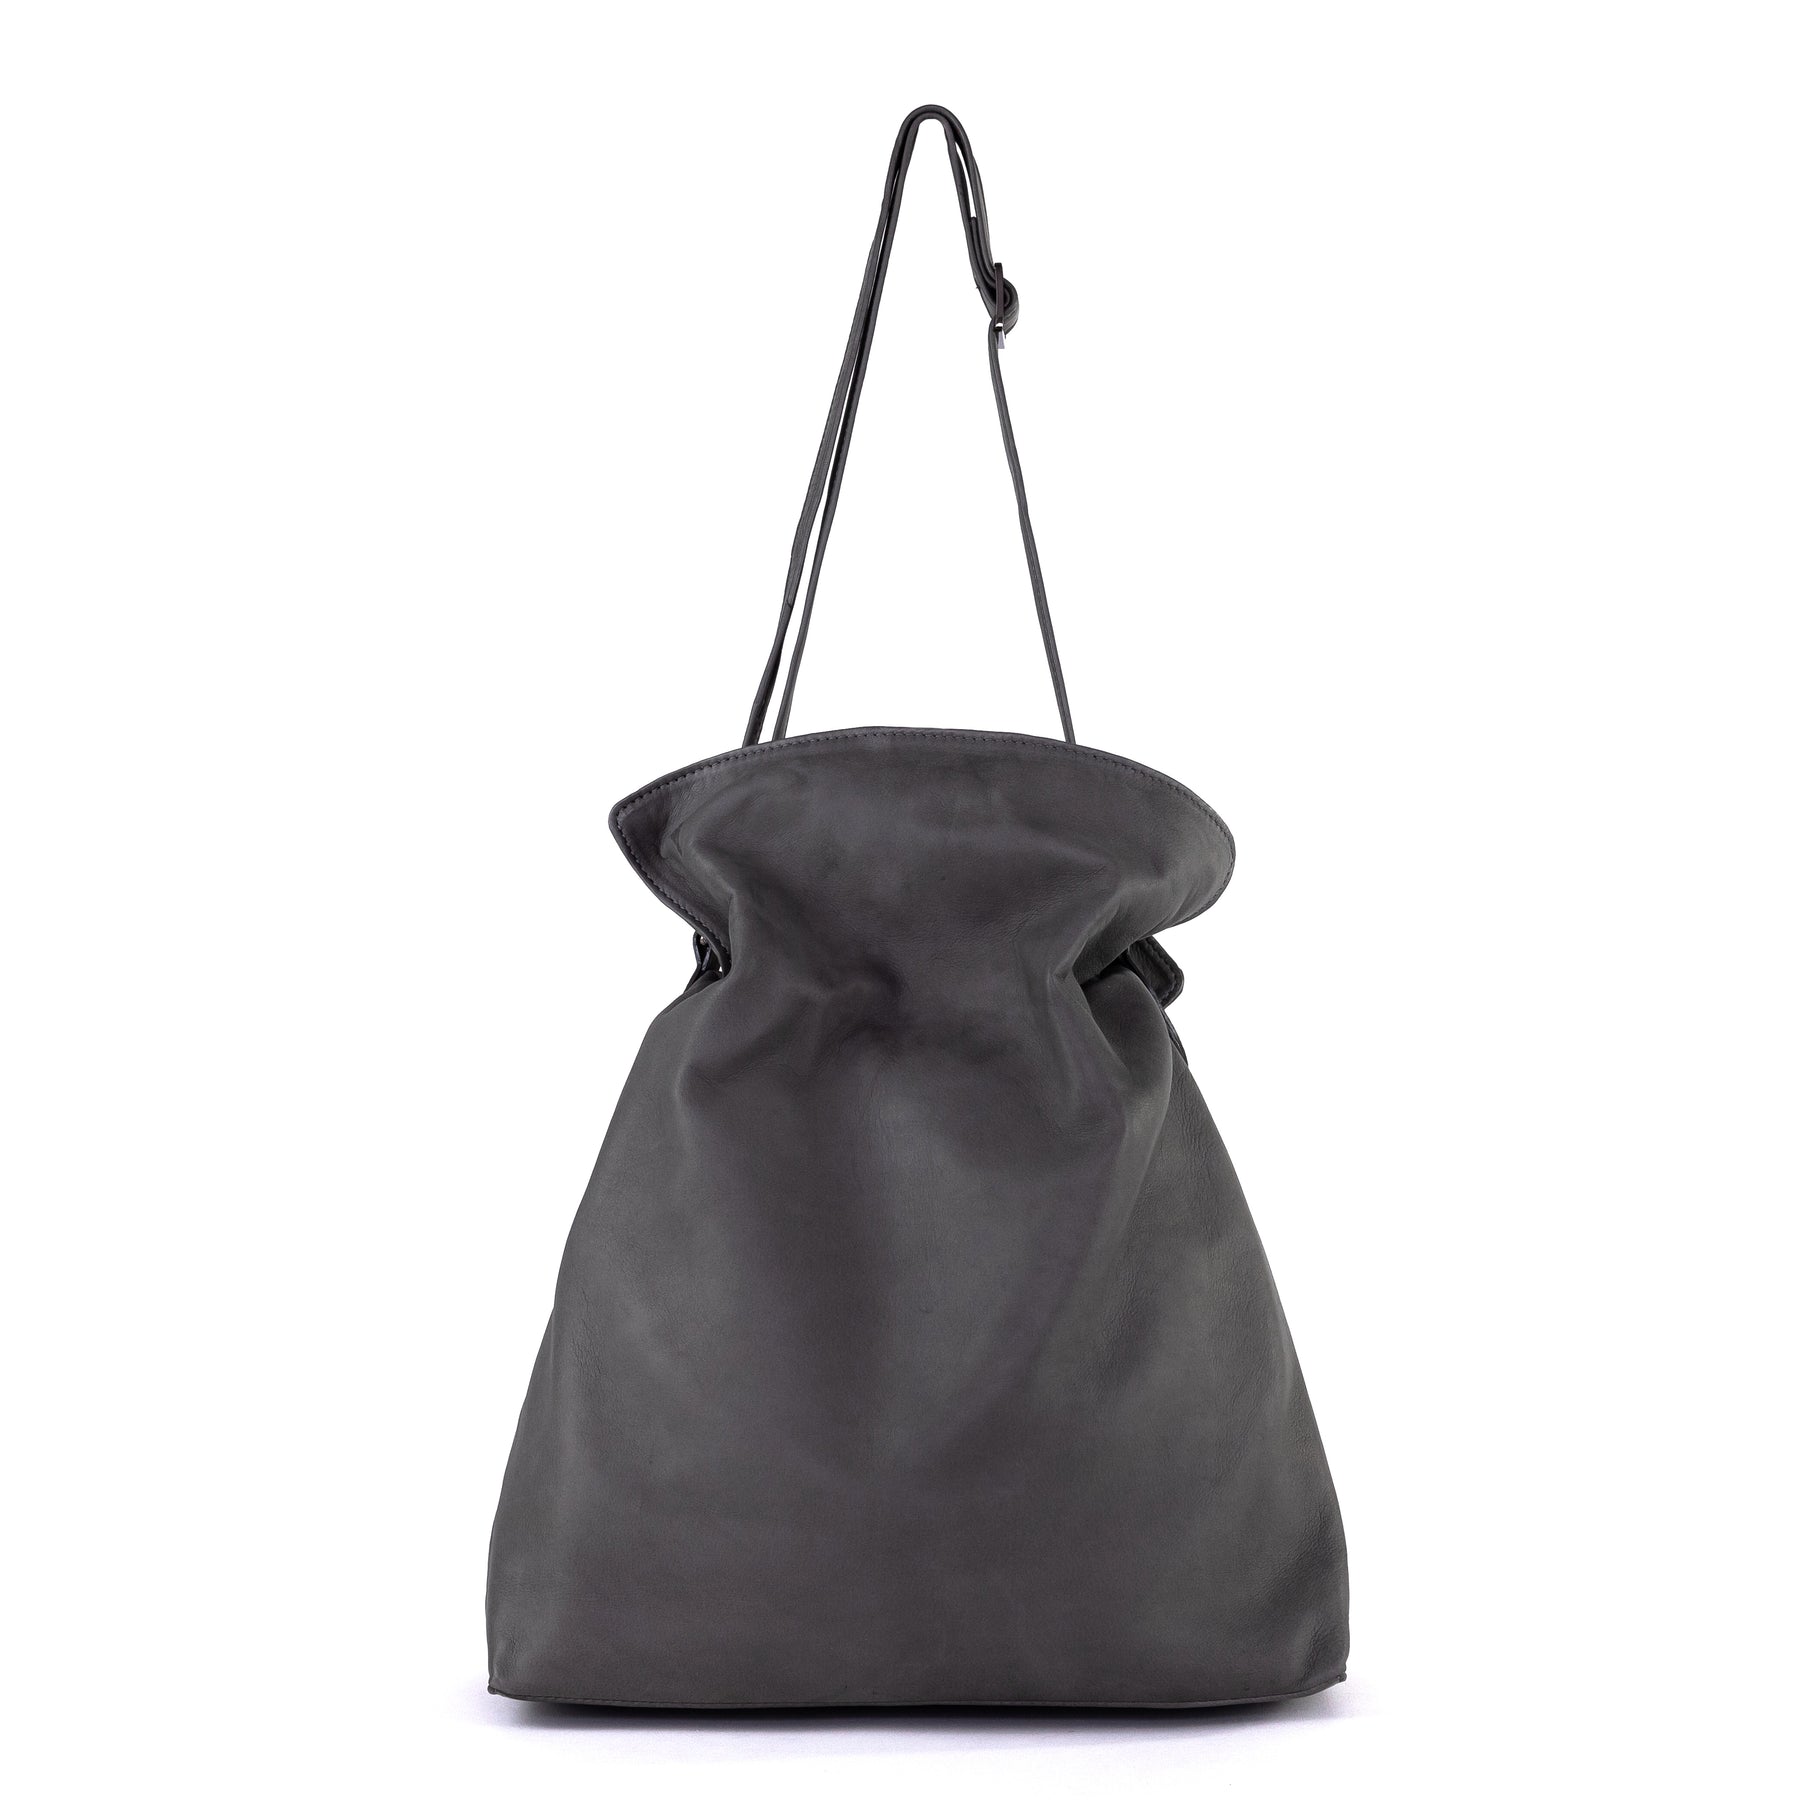 Alice Hobo | Leather Hobo Bag by Taylor Yates